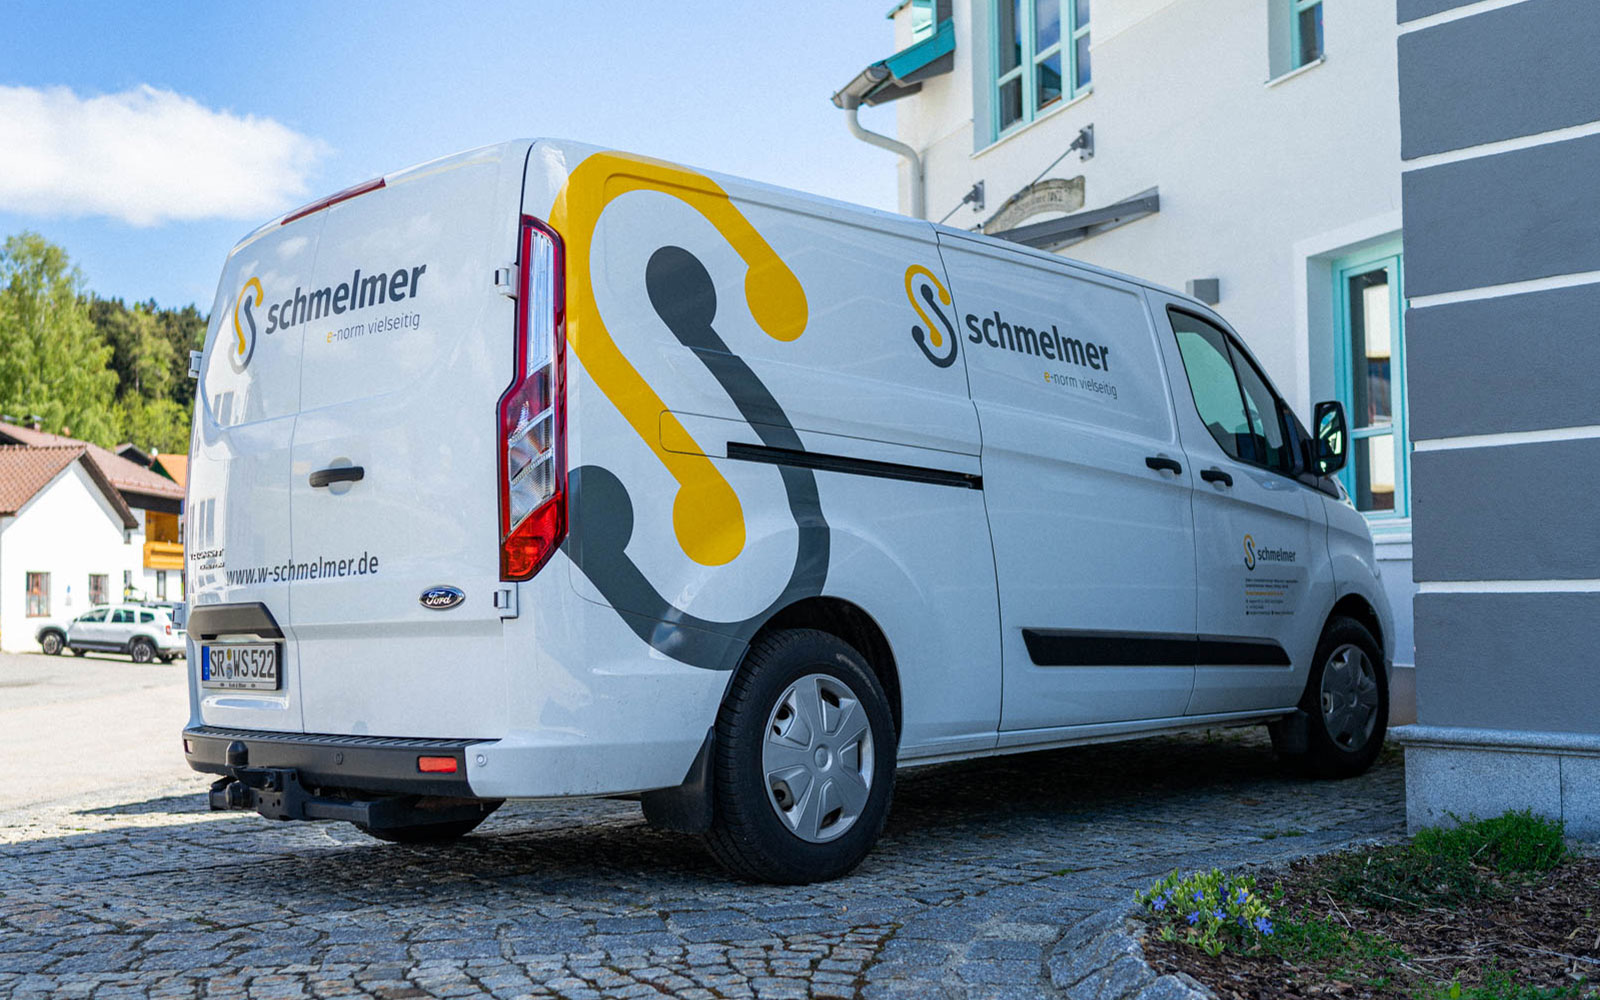 Werner Schmelmer GmbH & Co.KG – Car Wrapping